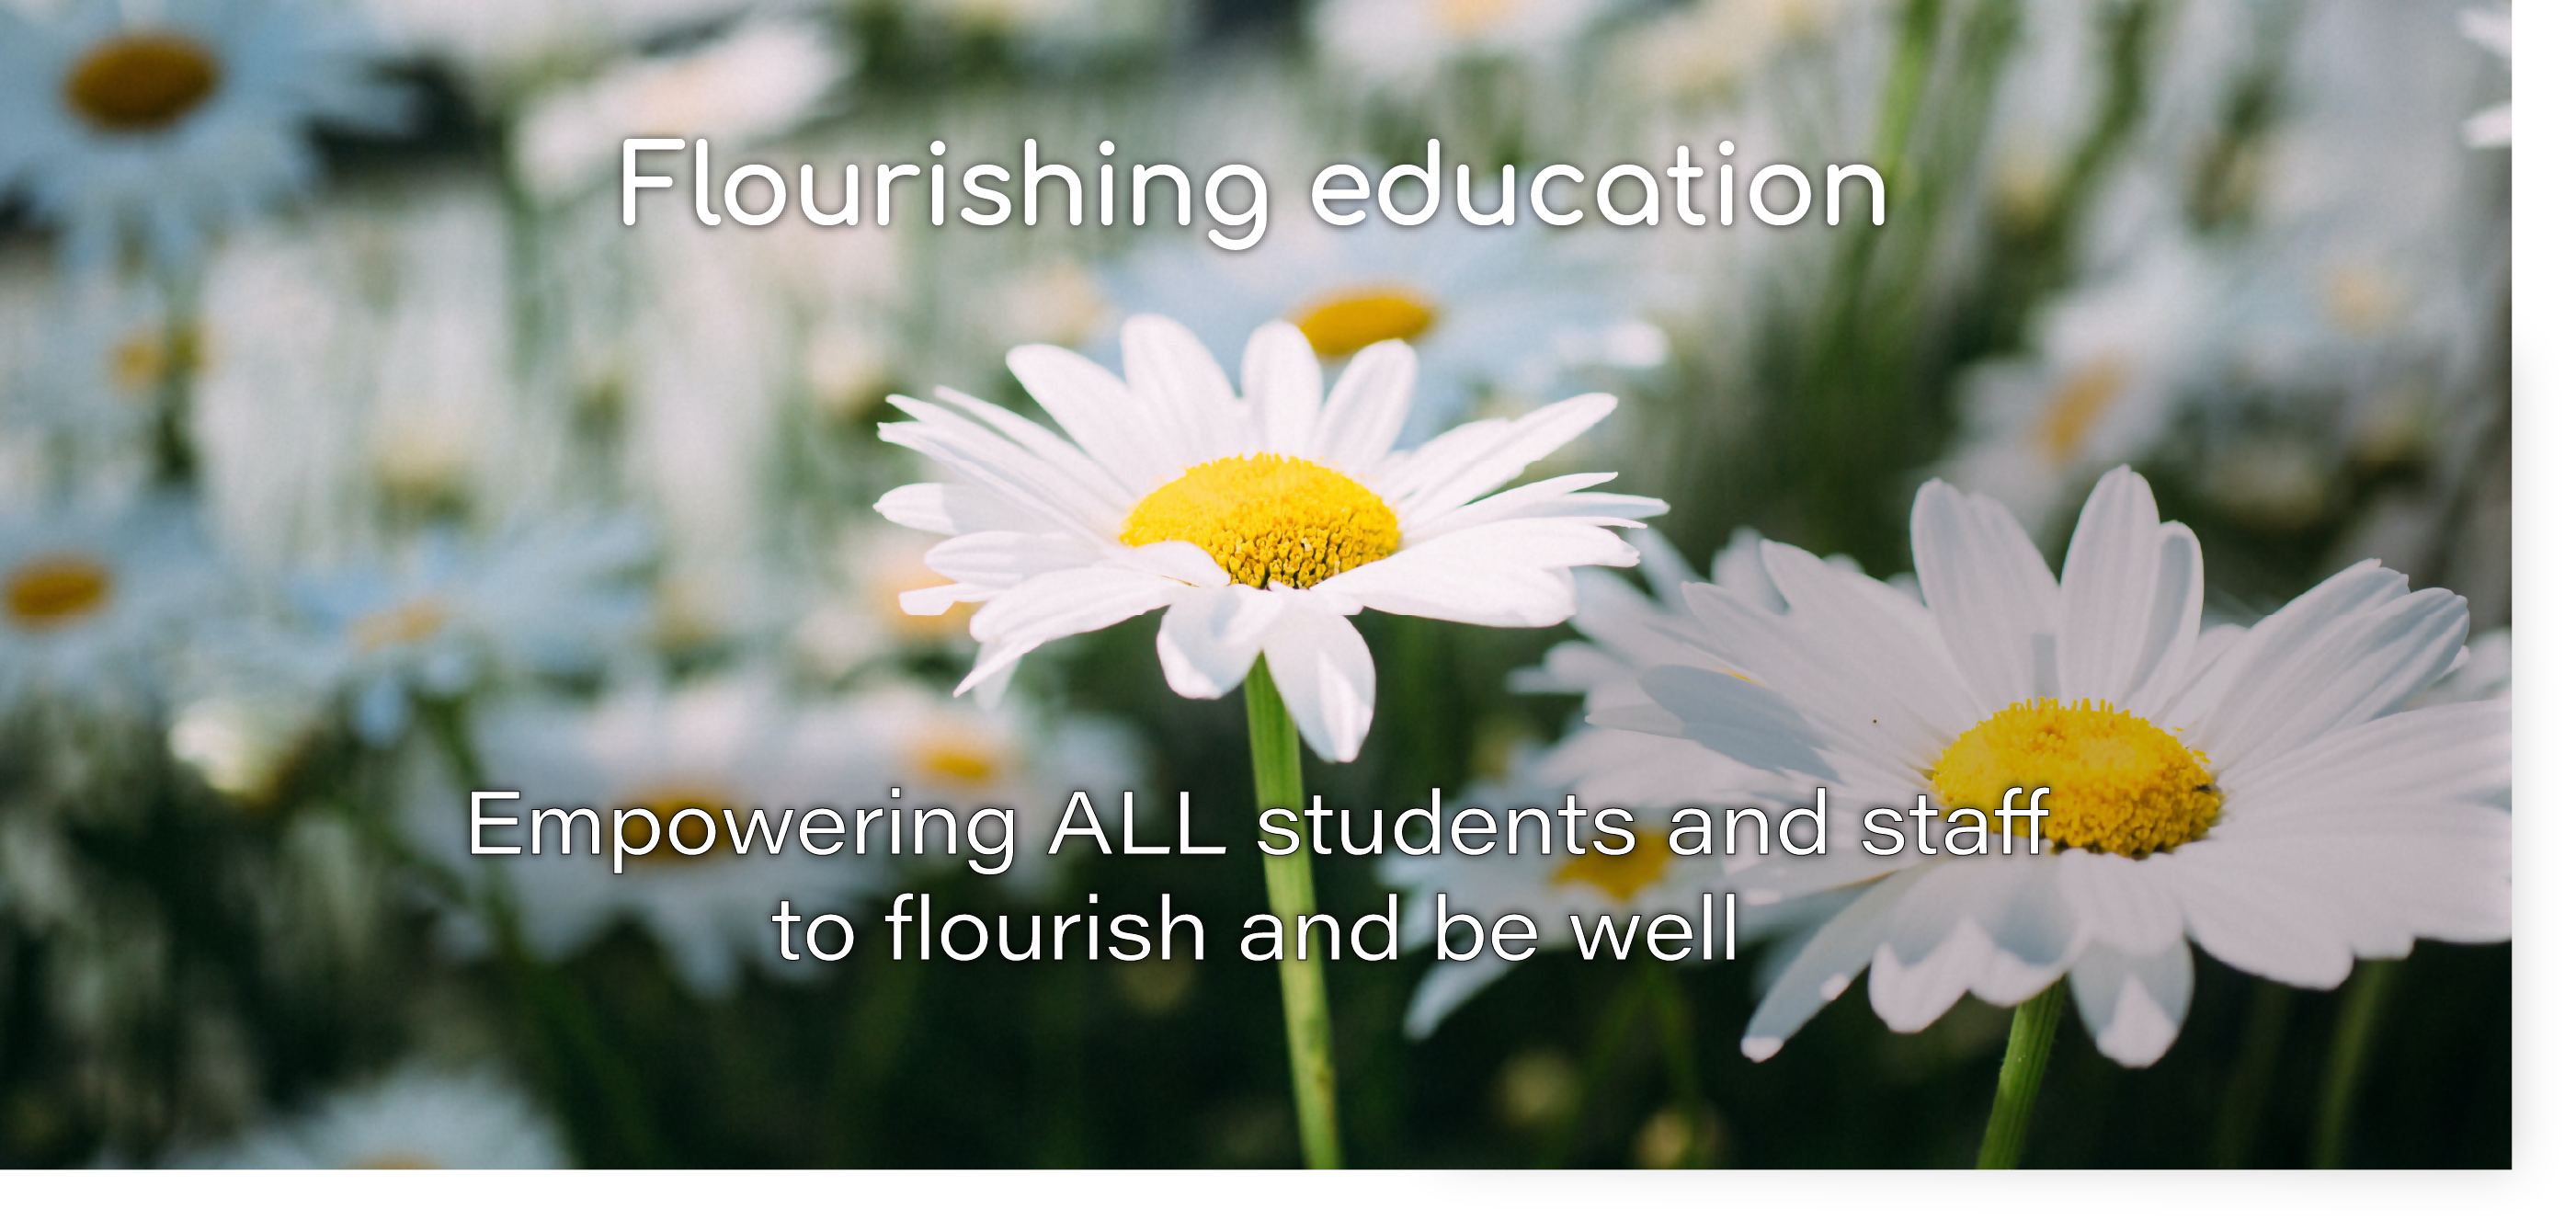 Flourishing education: Empower